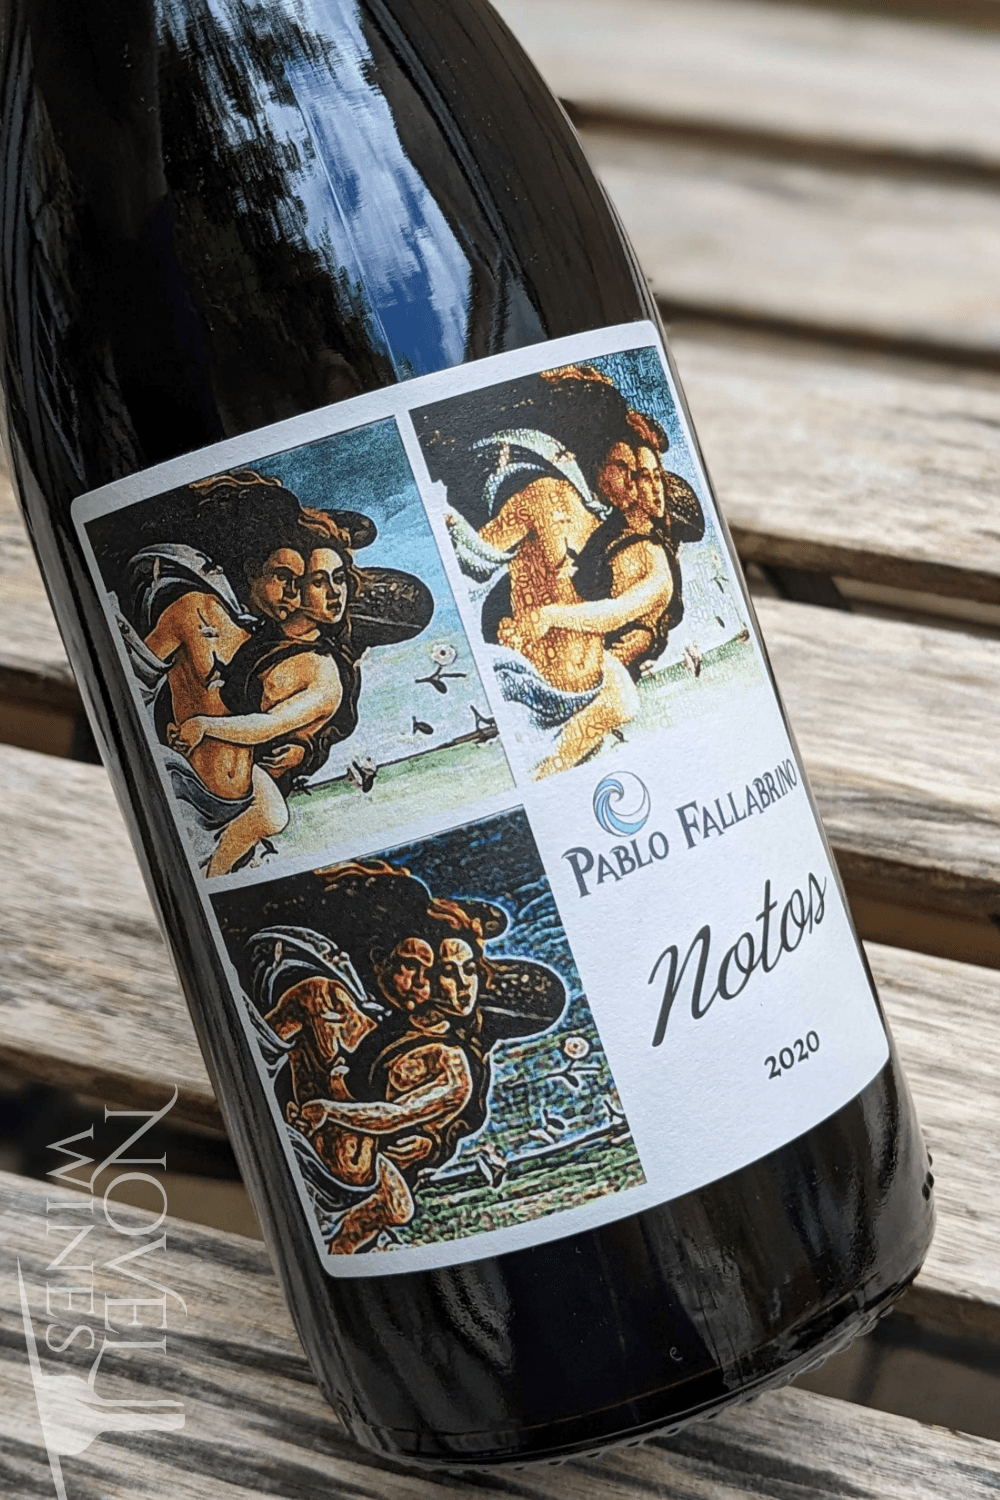 Vinedo de los Vientos Red Wine Vinedo de los Vientos Pablo Fallabrino Notos Nebbiolo 2020, Uruguay